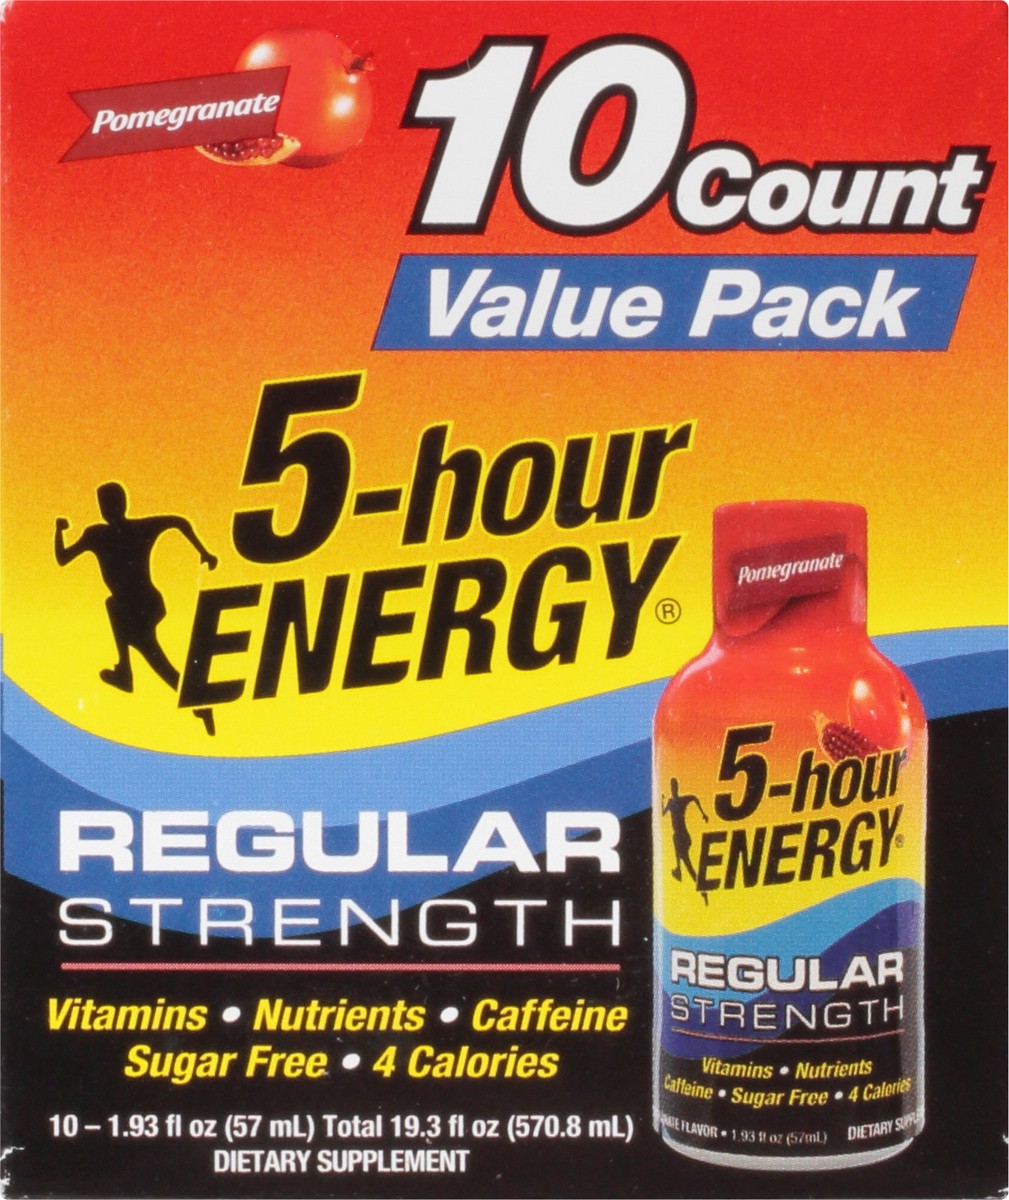 slide 10 of 13, 5-hour ENERGY Shot, Regular Strength, Pomegranate, 10 ct